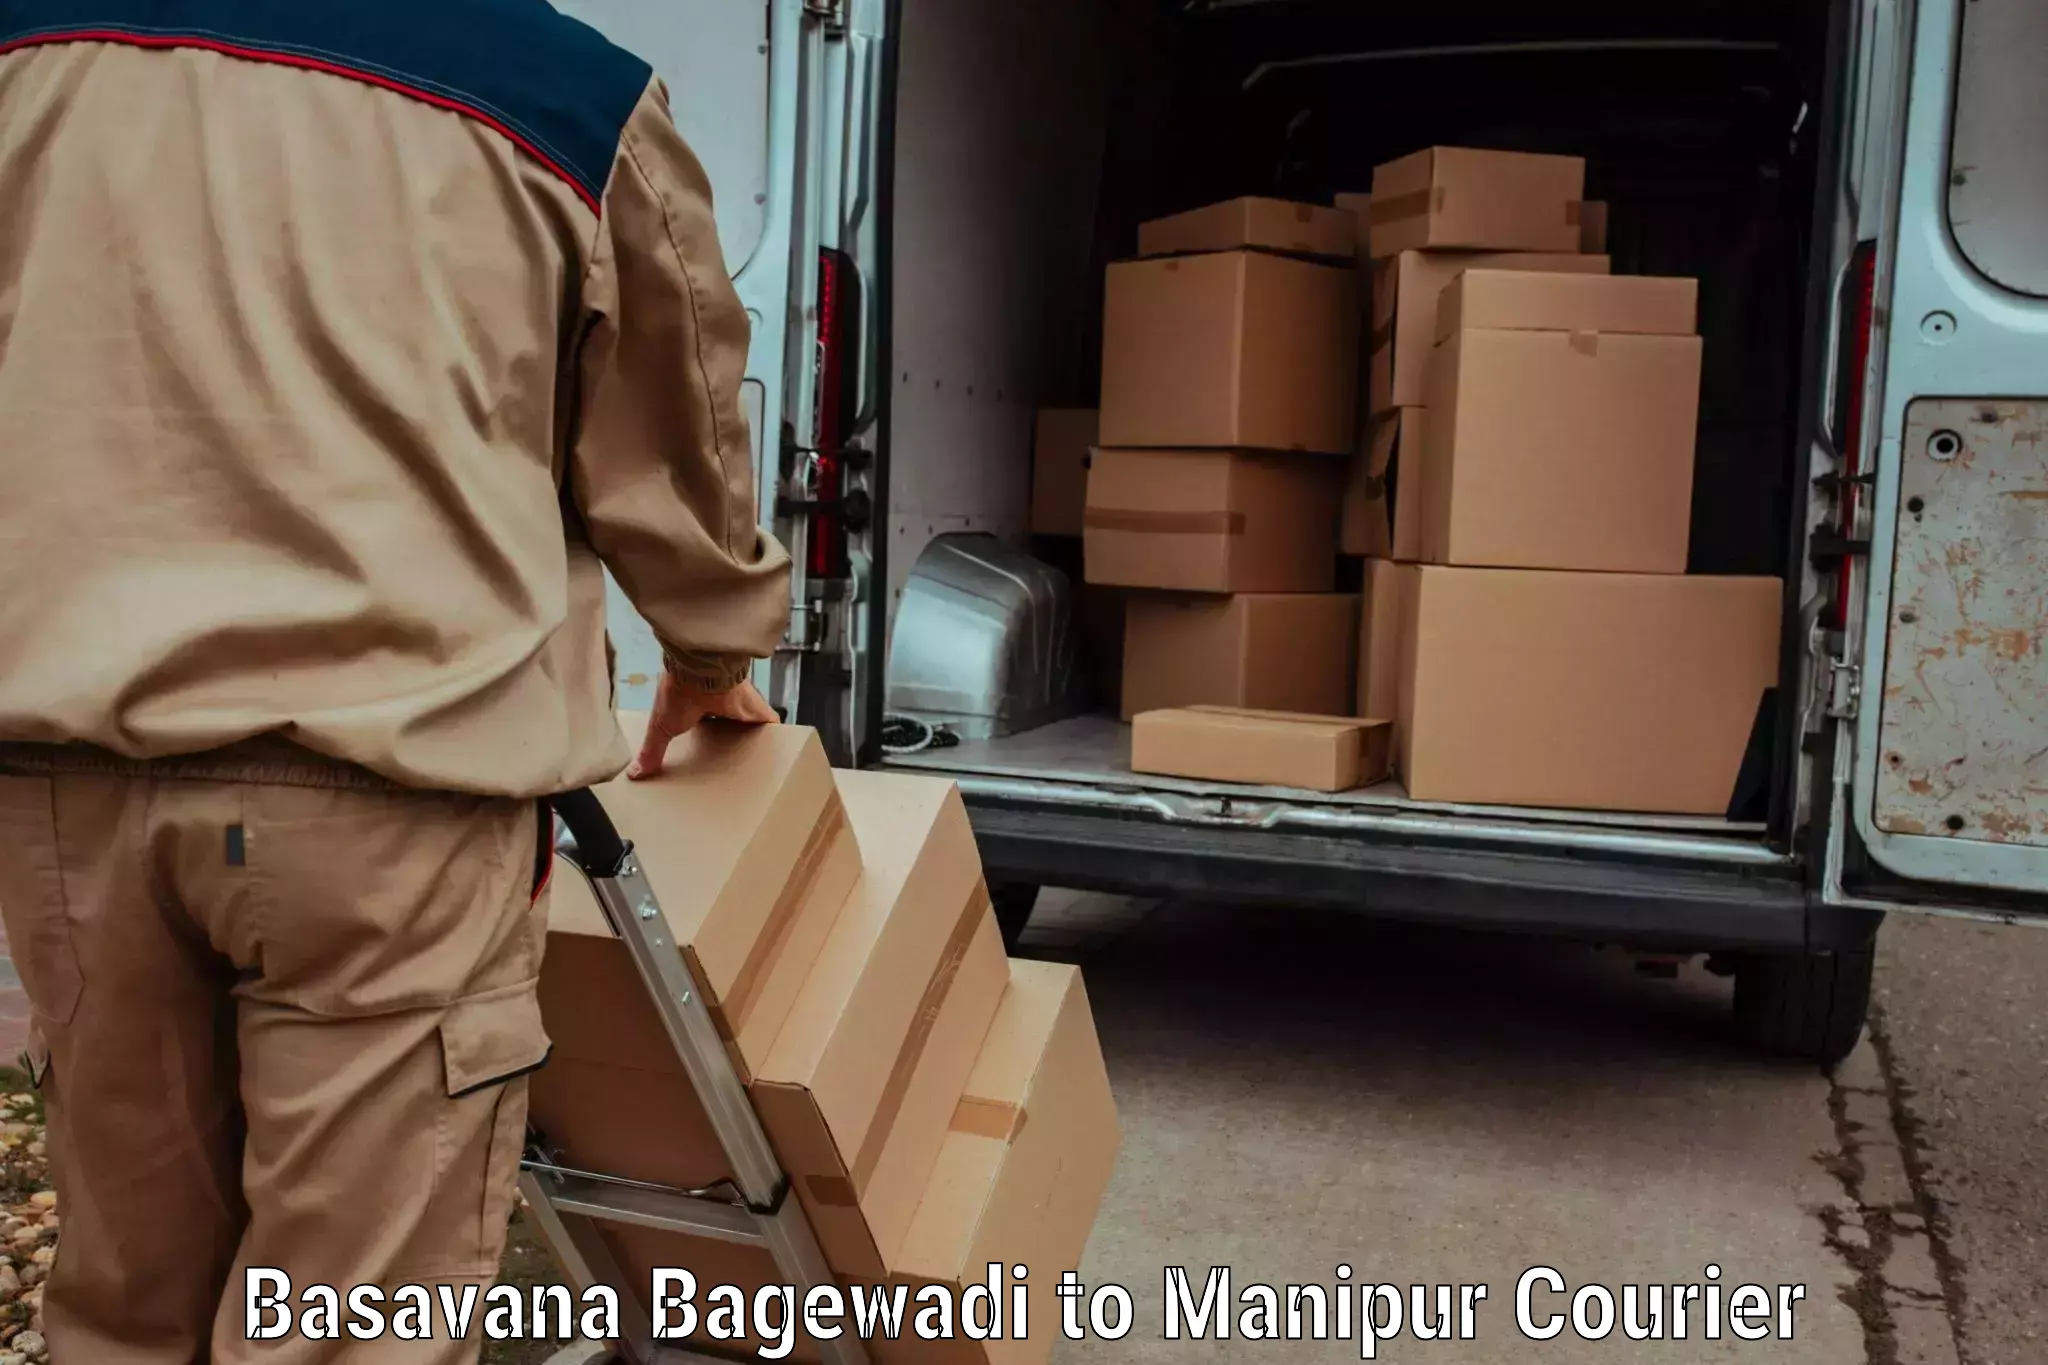 Modern delivery methods Basavana Bagewadi to NIT Manipur